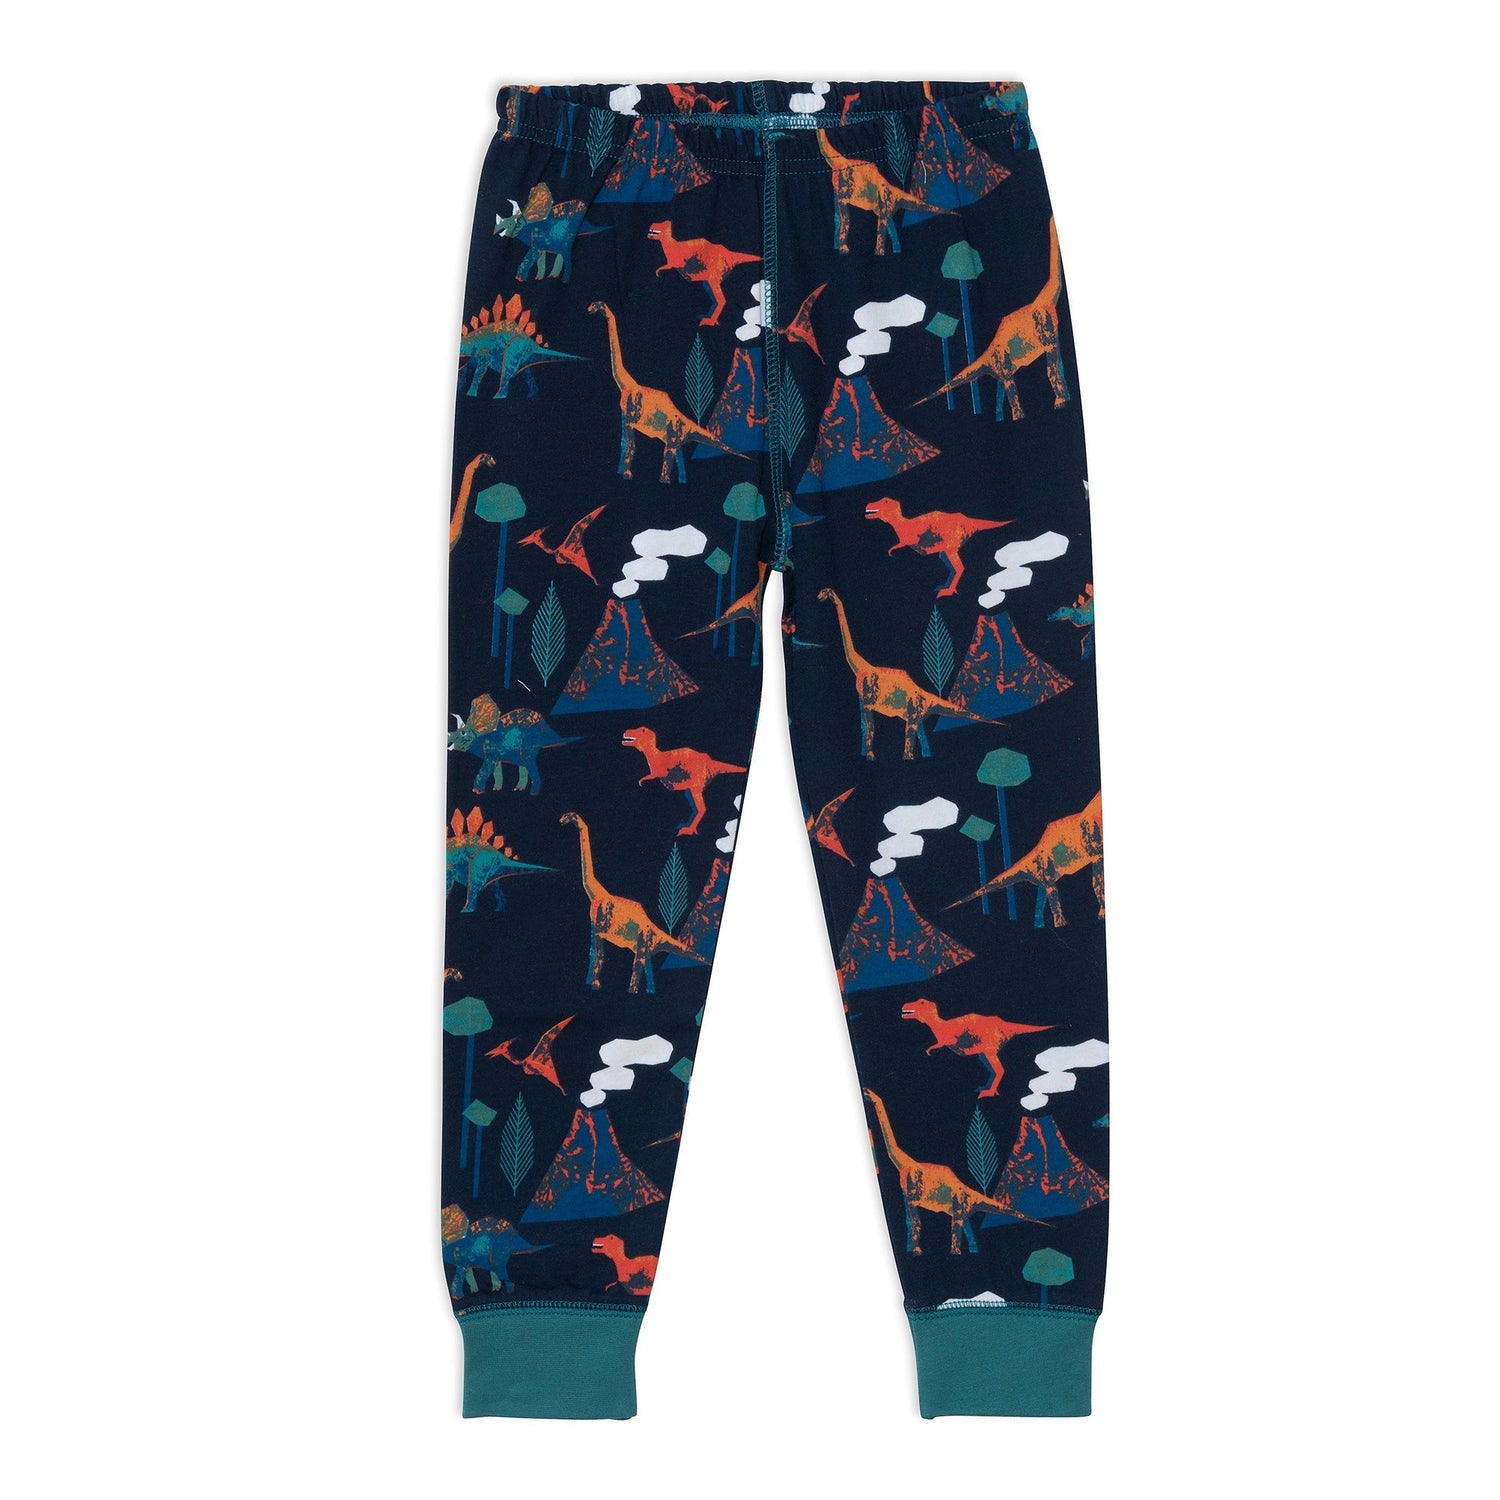 Organic Cotton Two Piece Pajama Set With Dinosaur Print E20PB13_031